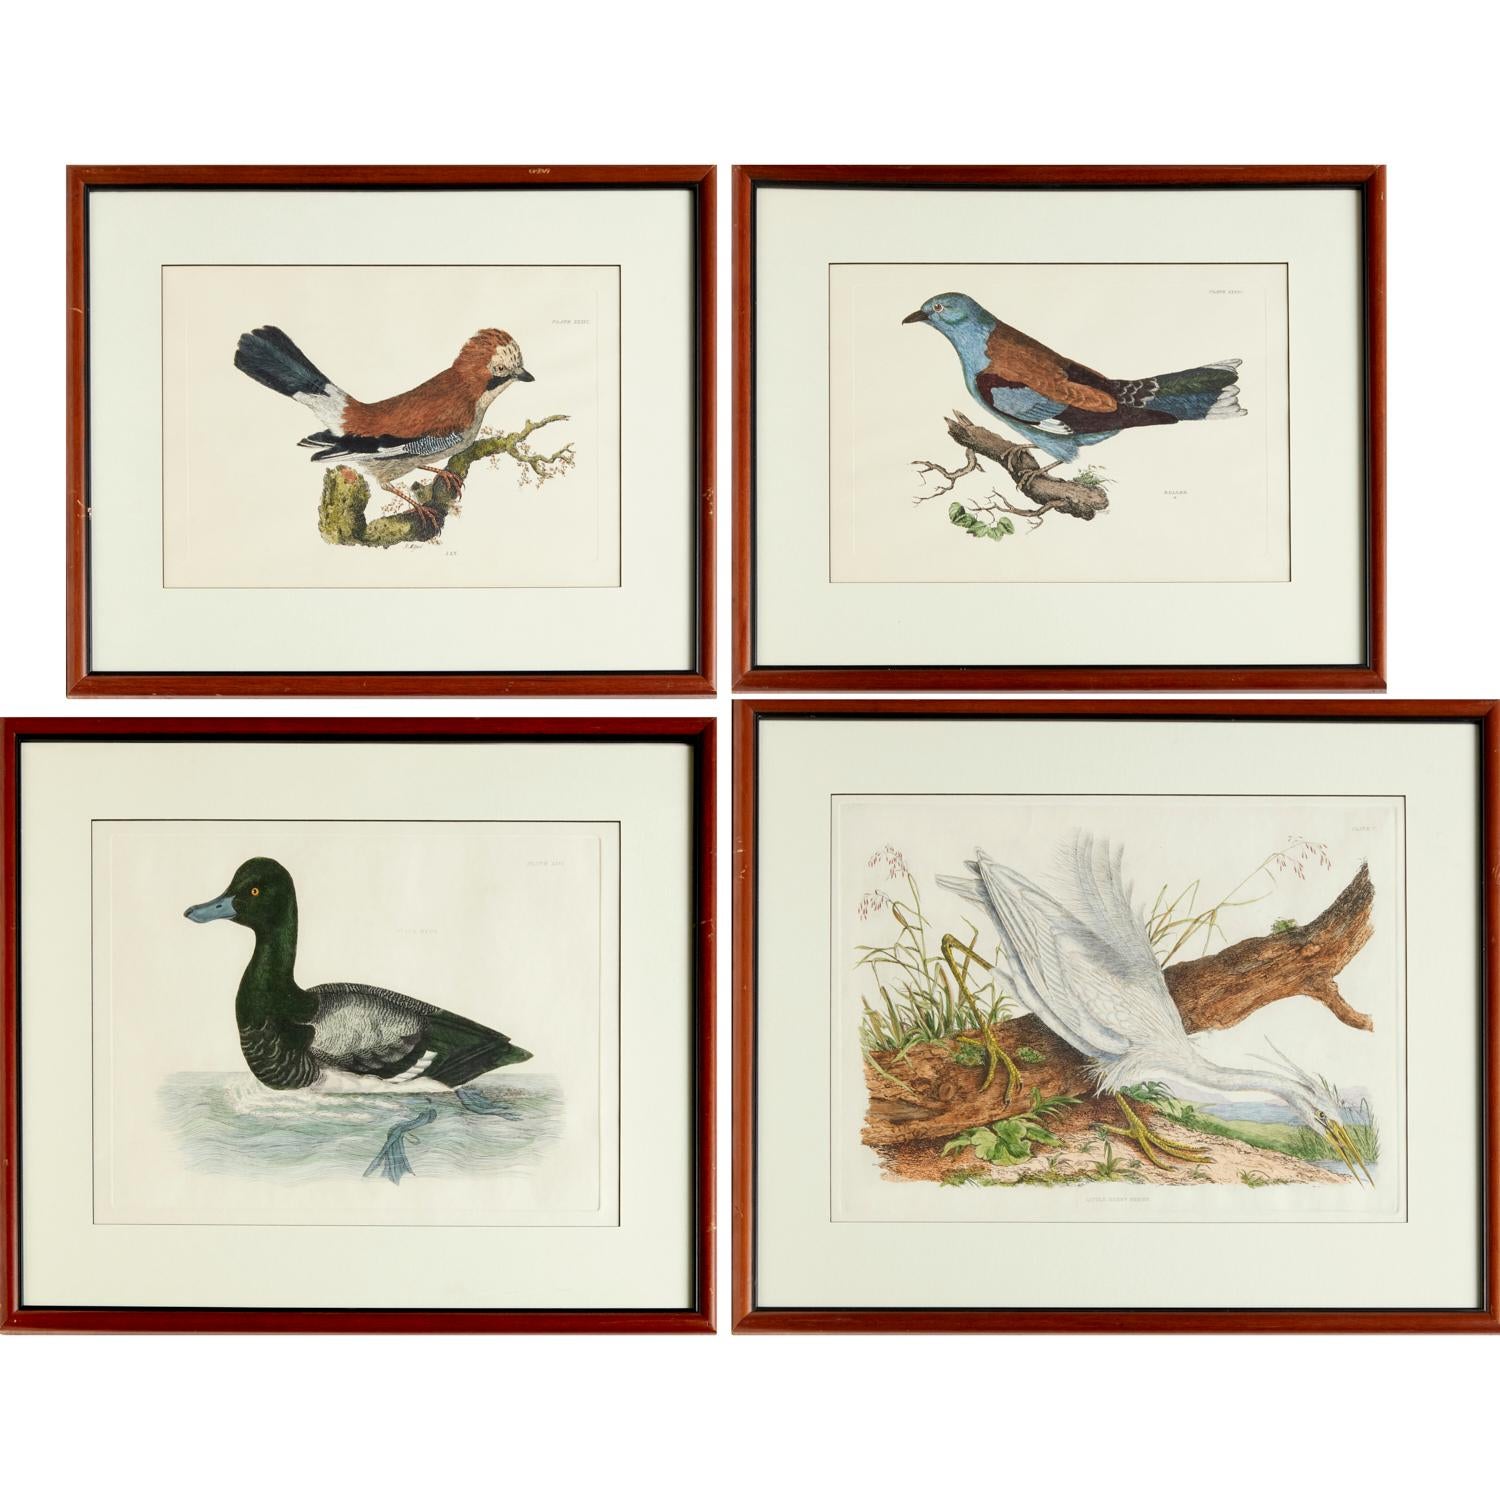 Aus Selby's Illustrations of British Ornithology (London: 1841-1846). Wahrscheinlich ein Nachdruck (20. Jh.), handkolorierte Drucke, geprägt mit Plattenmarken, darunter zwei nach Prideaux John Selby: 